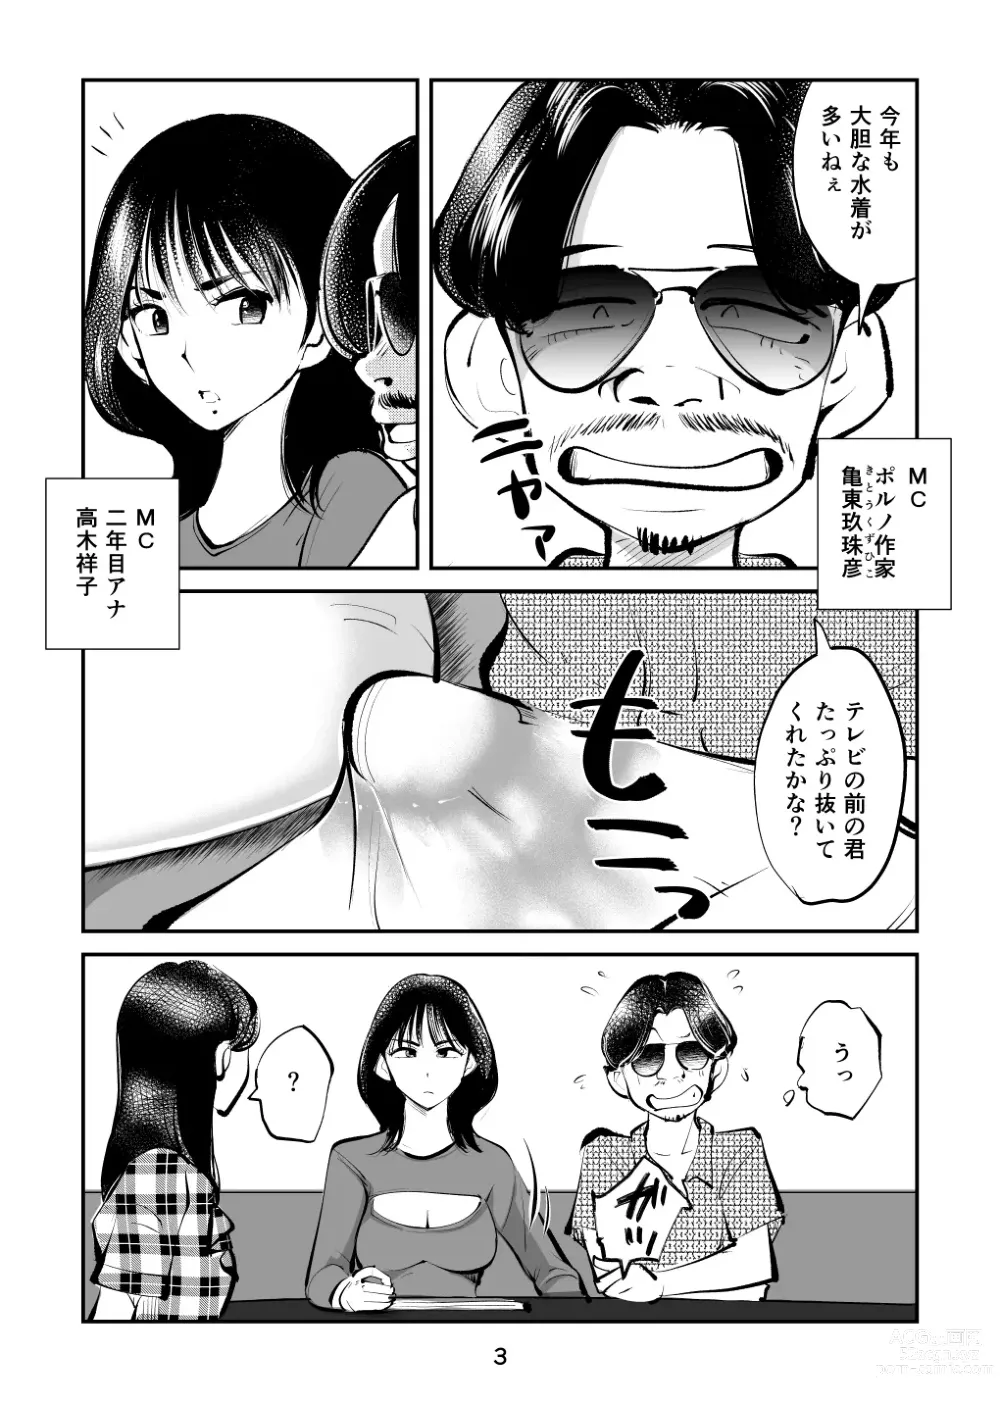 Page 3 of doujinshi Kintama o tsubushita joshi-ana